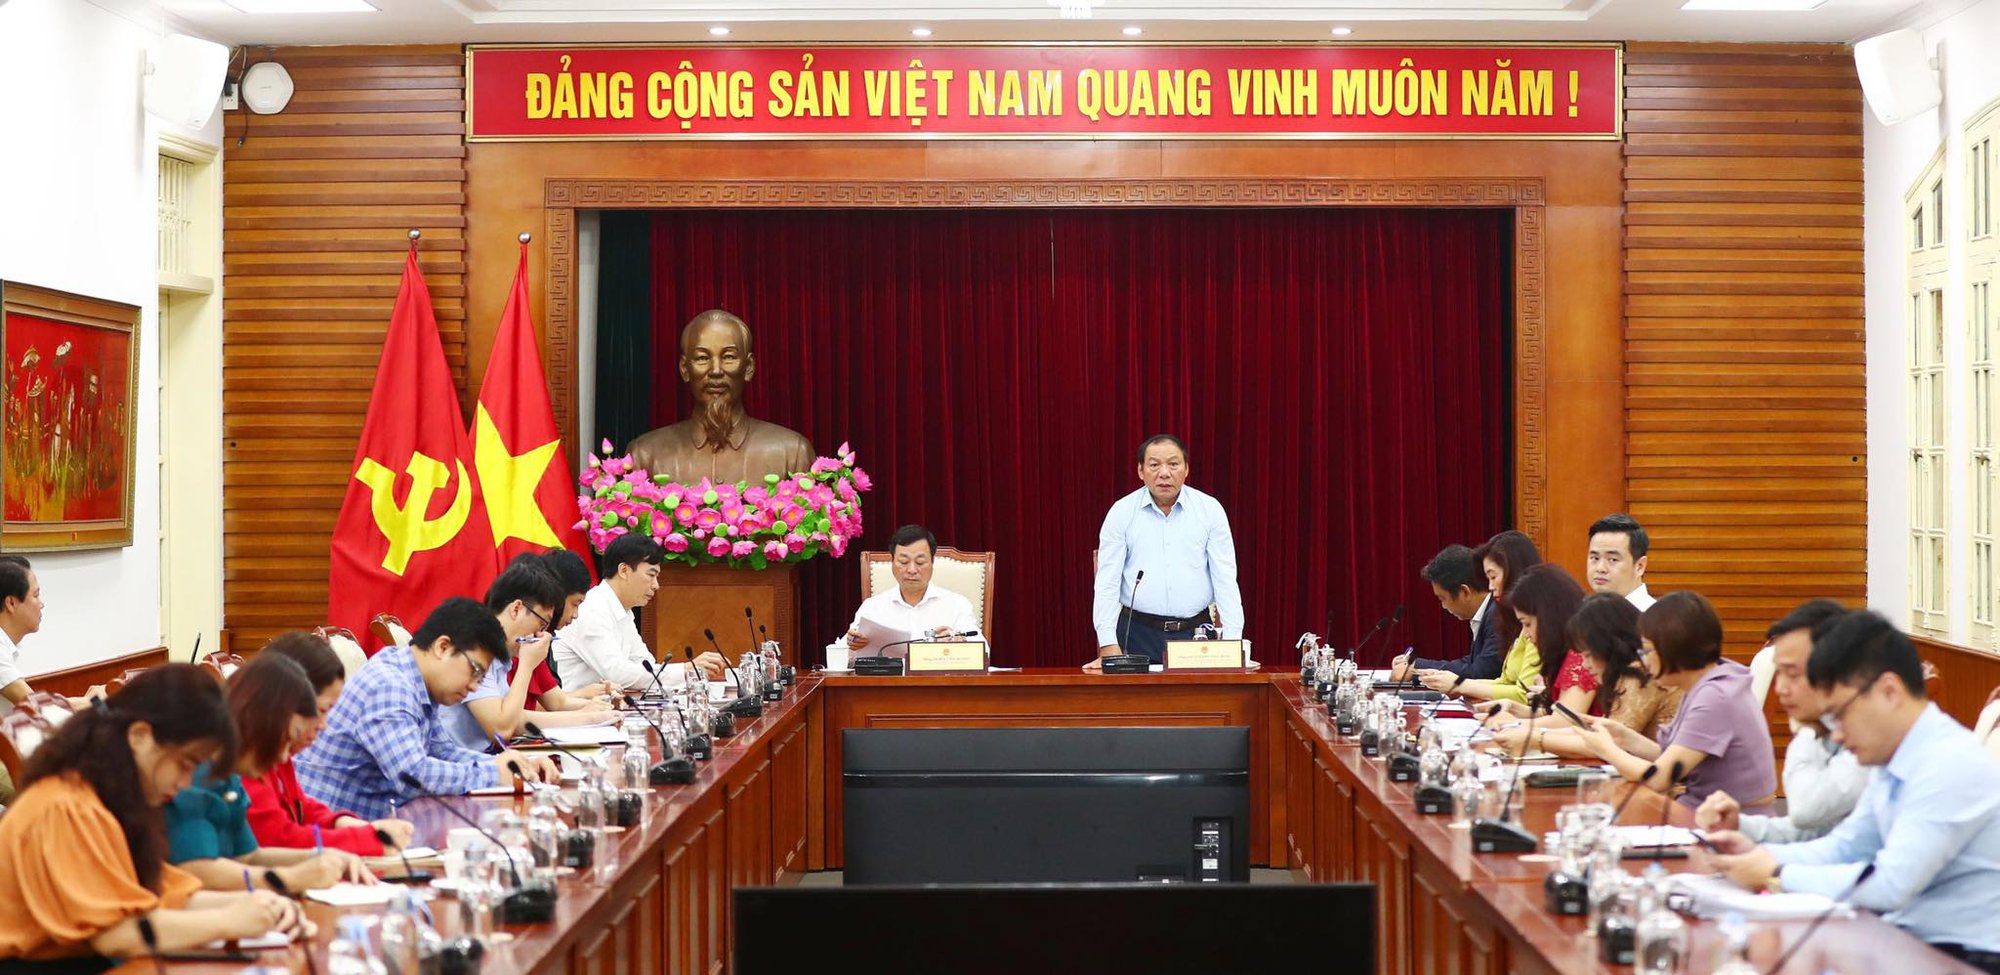 Bộ trưởng Nguyễn Văn Hùng: Triển khai có chiều sâu nhiệm vụ chấn hưng và phát triển văn hoá với các sự kiện có tầm vóc, tôn vinh các di sản phi vật thể vô giá